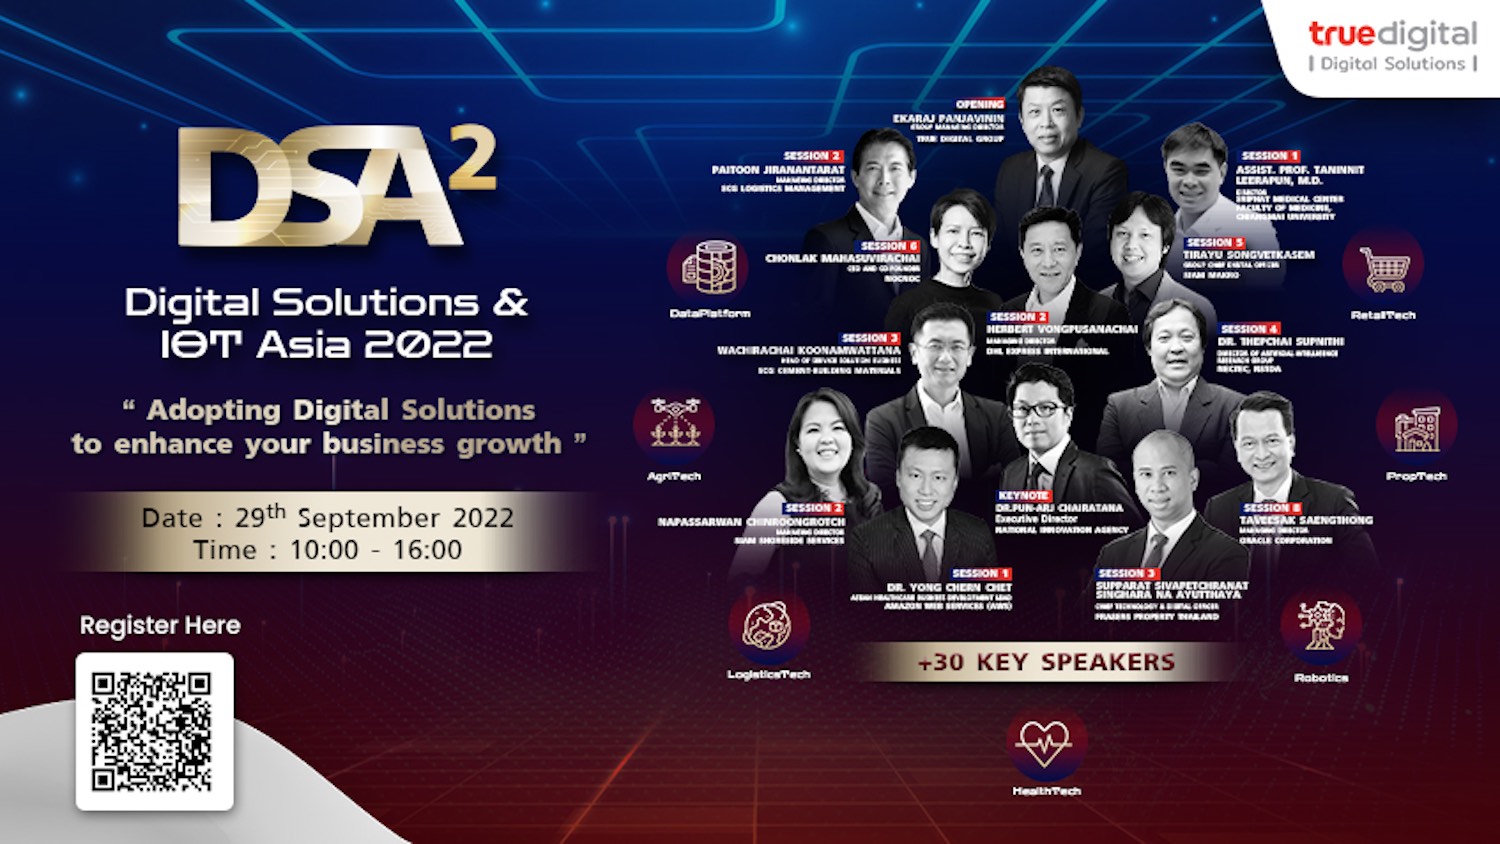 กลับมาอีกครั้ง! งานสัมมนาออนไลน์ Digital Solutions & IoT Asia (DSA2) 2022 วันนี้ 29 ก.ย. 2022 10:00-16:00 น.